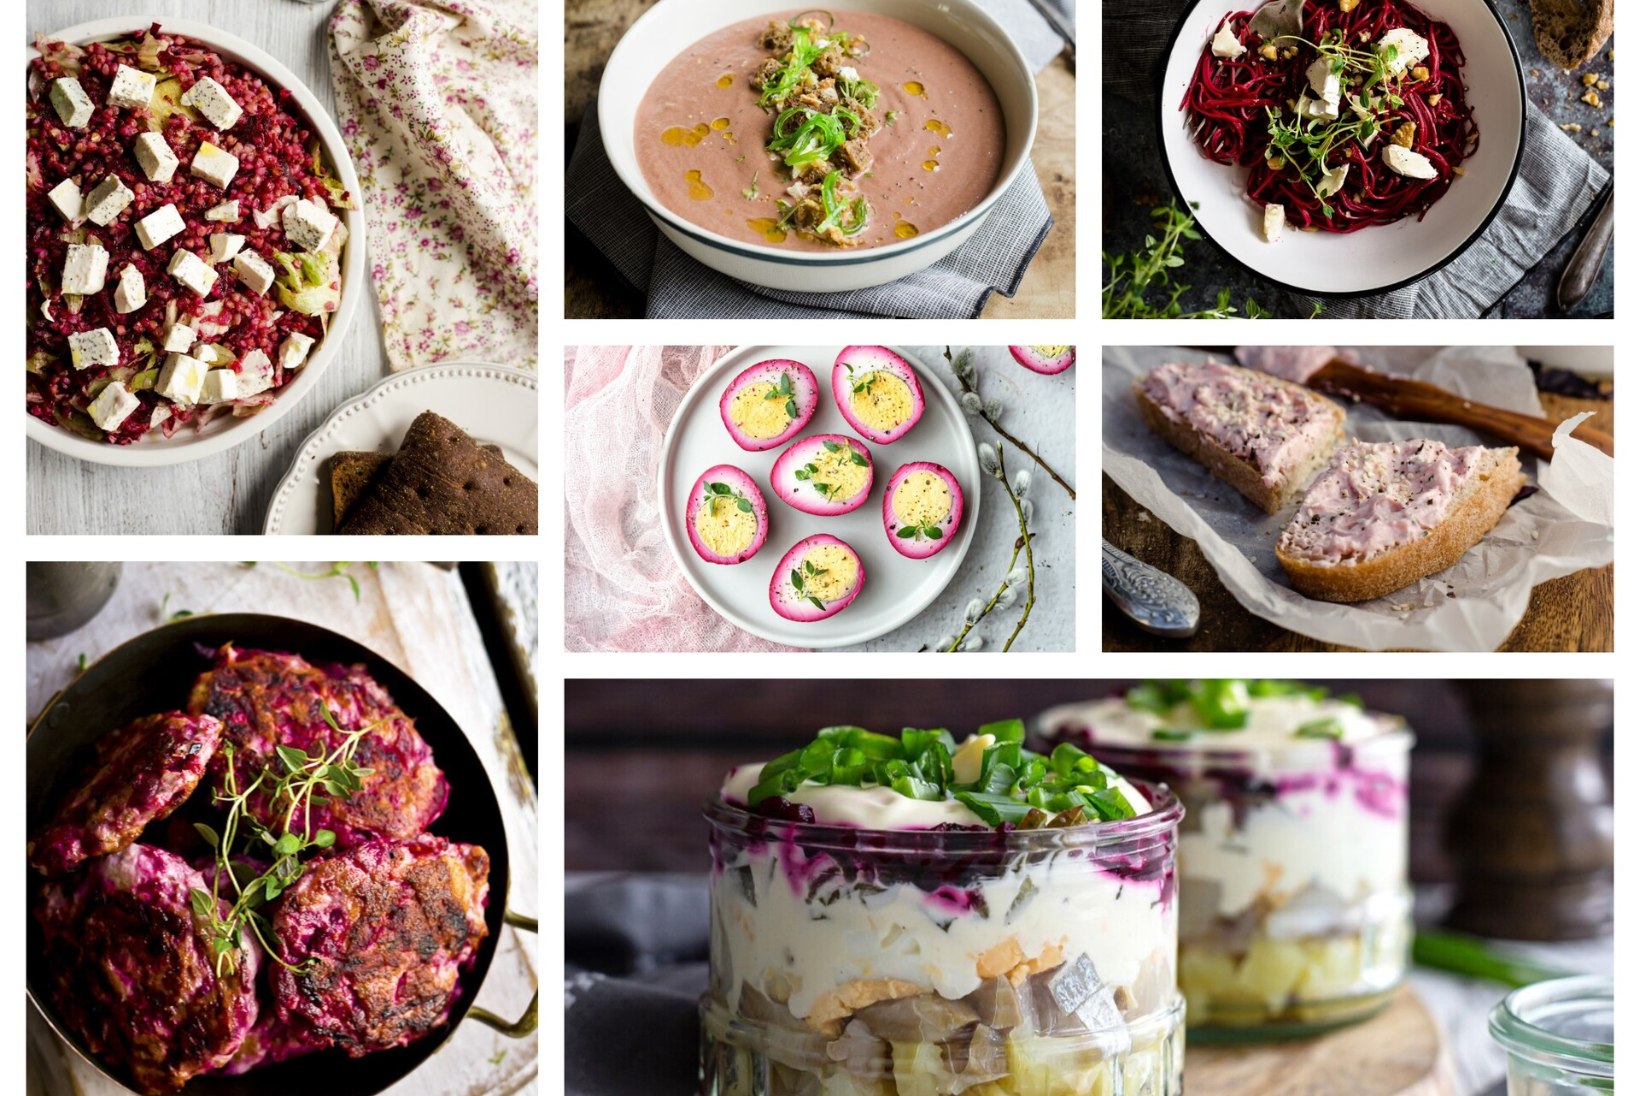 NÄDAL MAITSVALT PEEDIGA | Põnev supp, tatrasalat, mahe võie, tummised kotletid, munaamps, toitev salat ja hõrk pasta